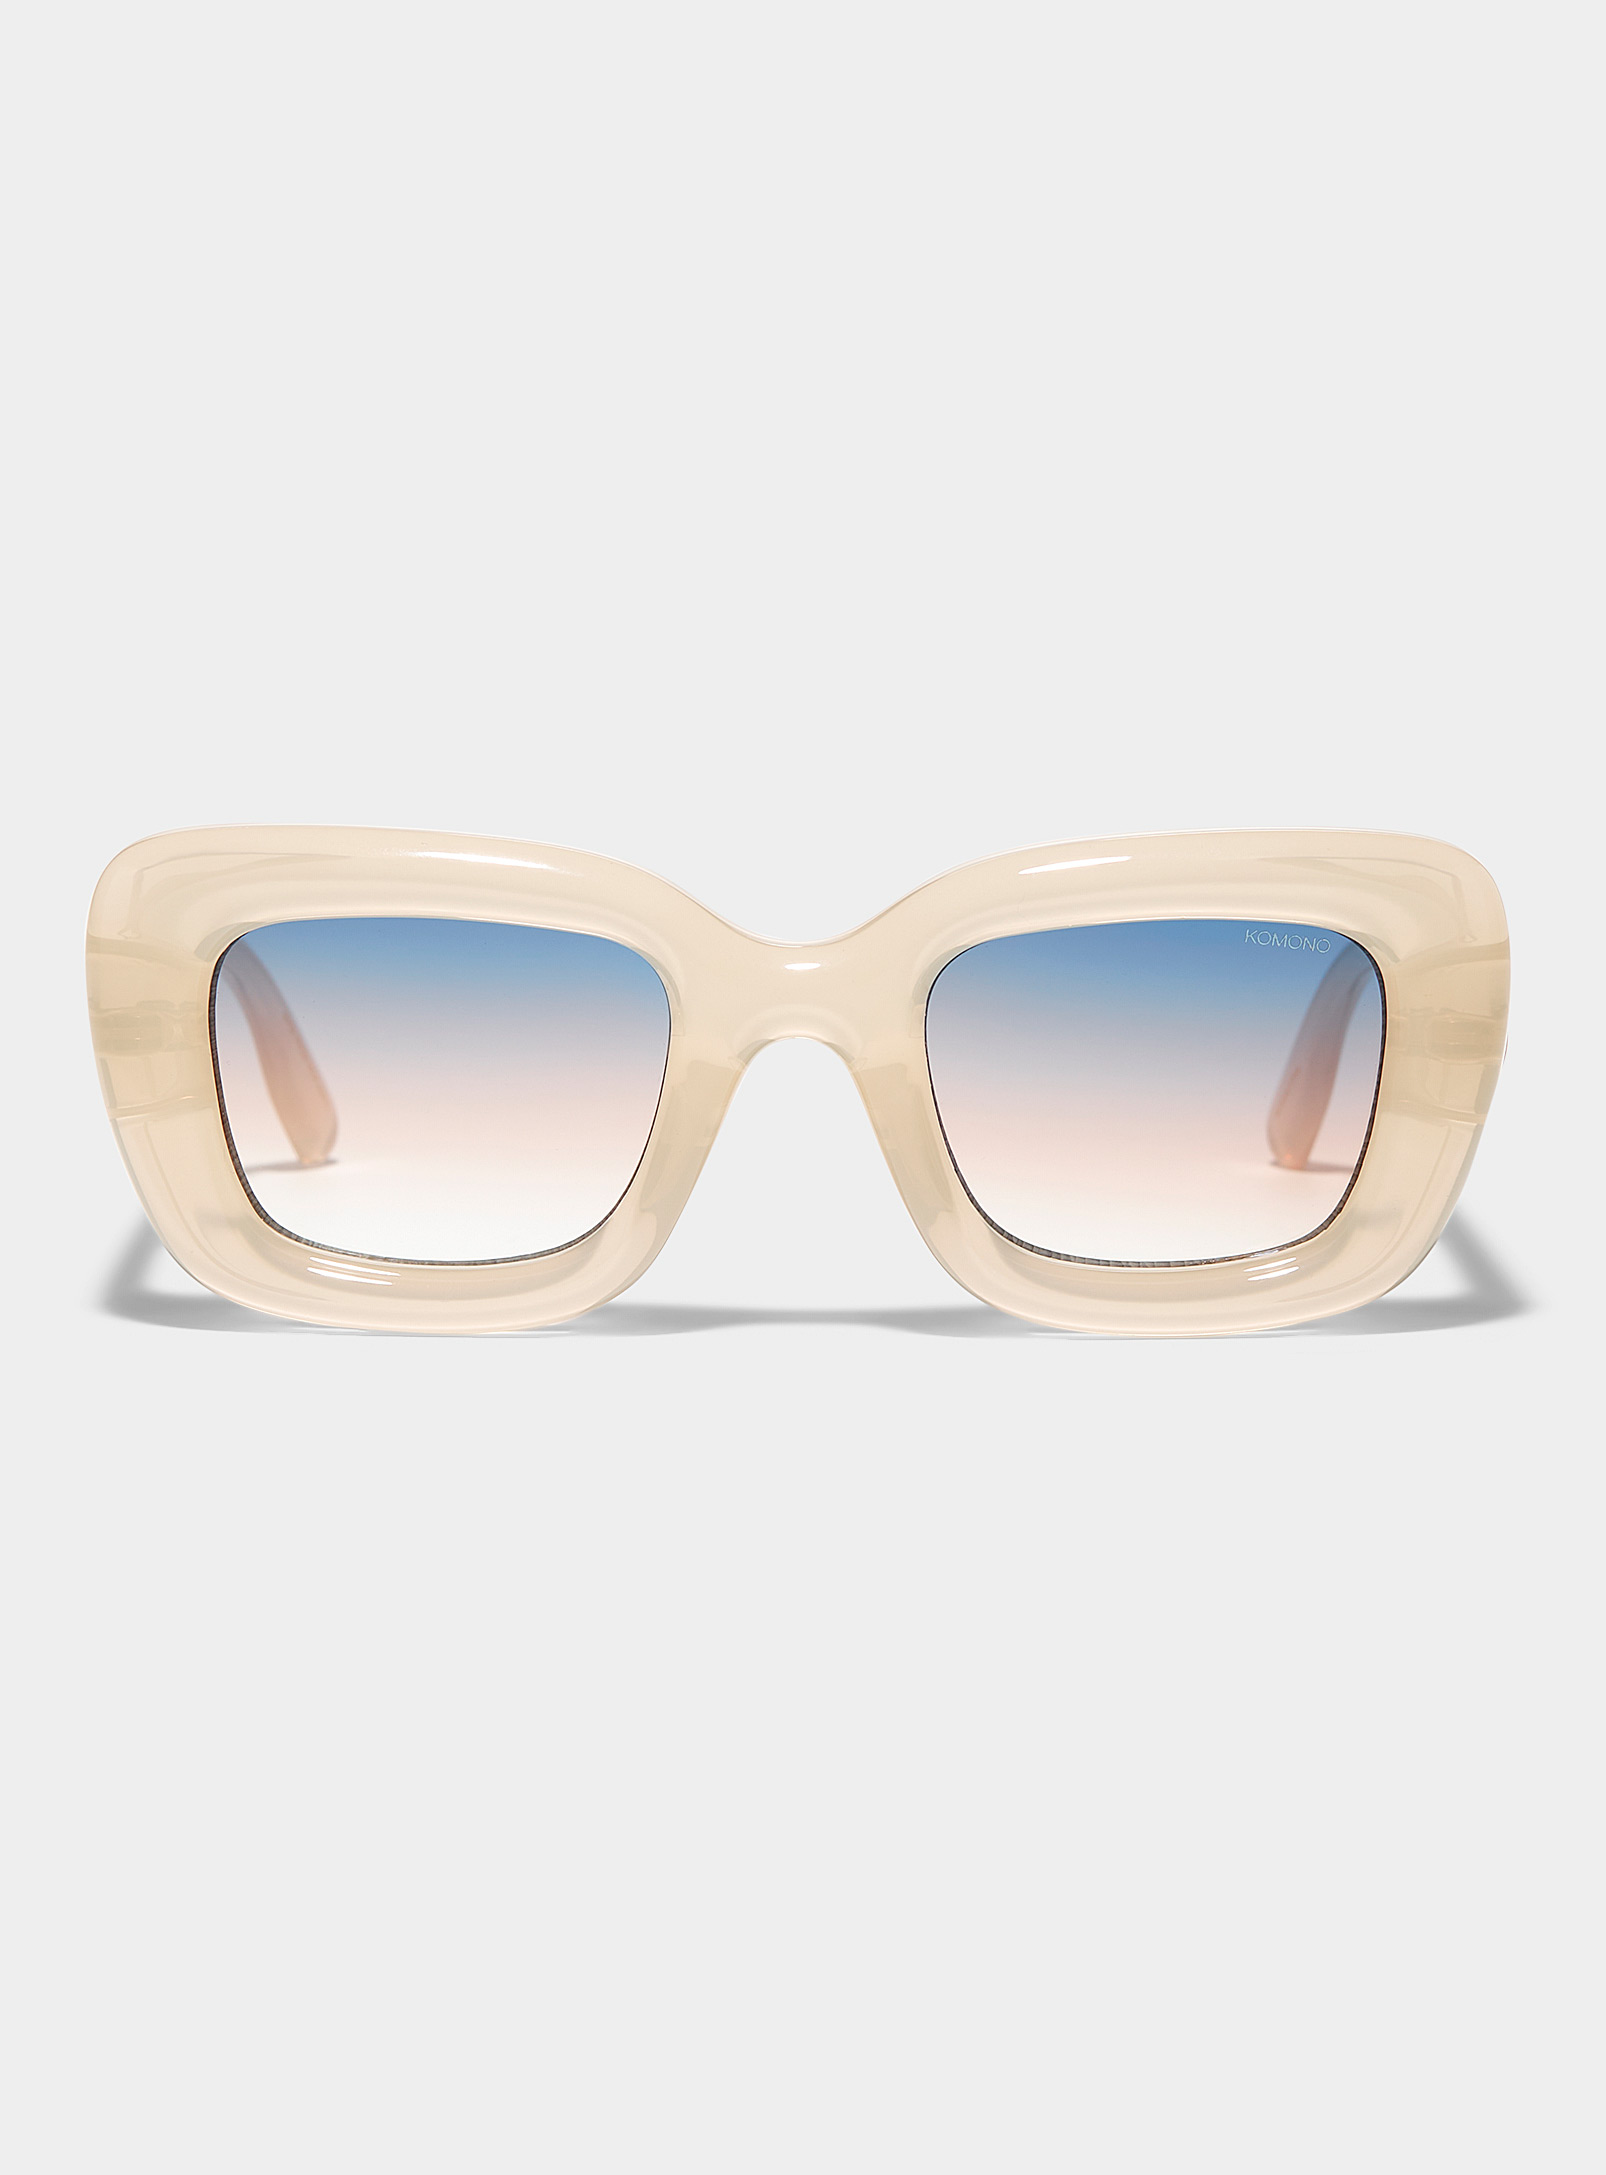 KOMONO - Women's Vita square sunglasses